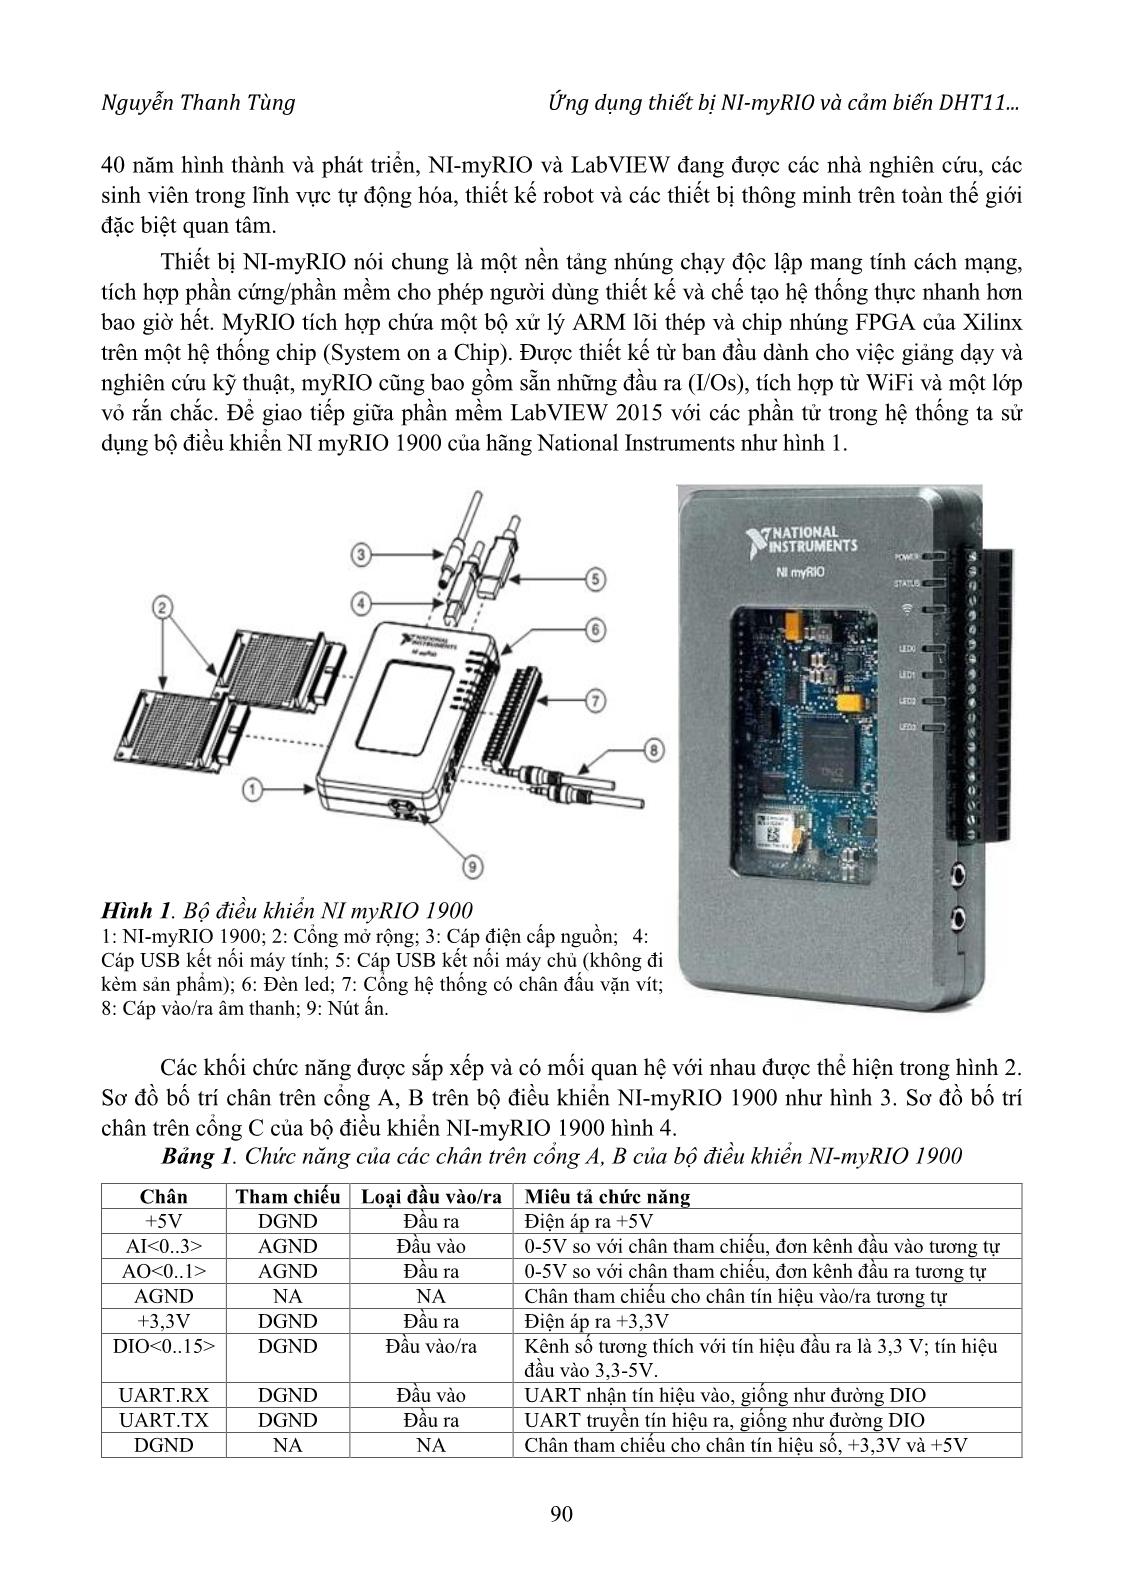 Ứng dụng thiết bị Ni-Myrio 1900 và cảm biến DHT11 khảo sát nhiệt độ và độ ẩm môi trường trang 2